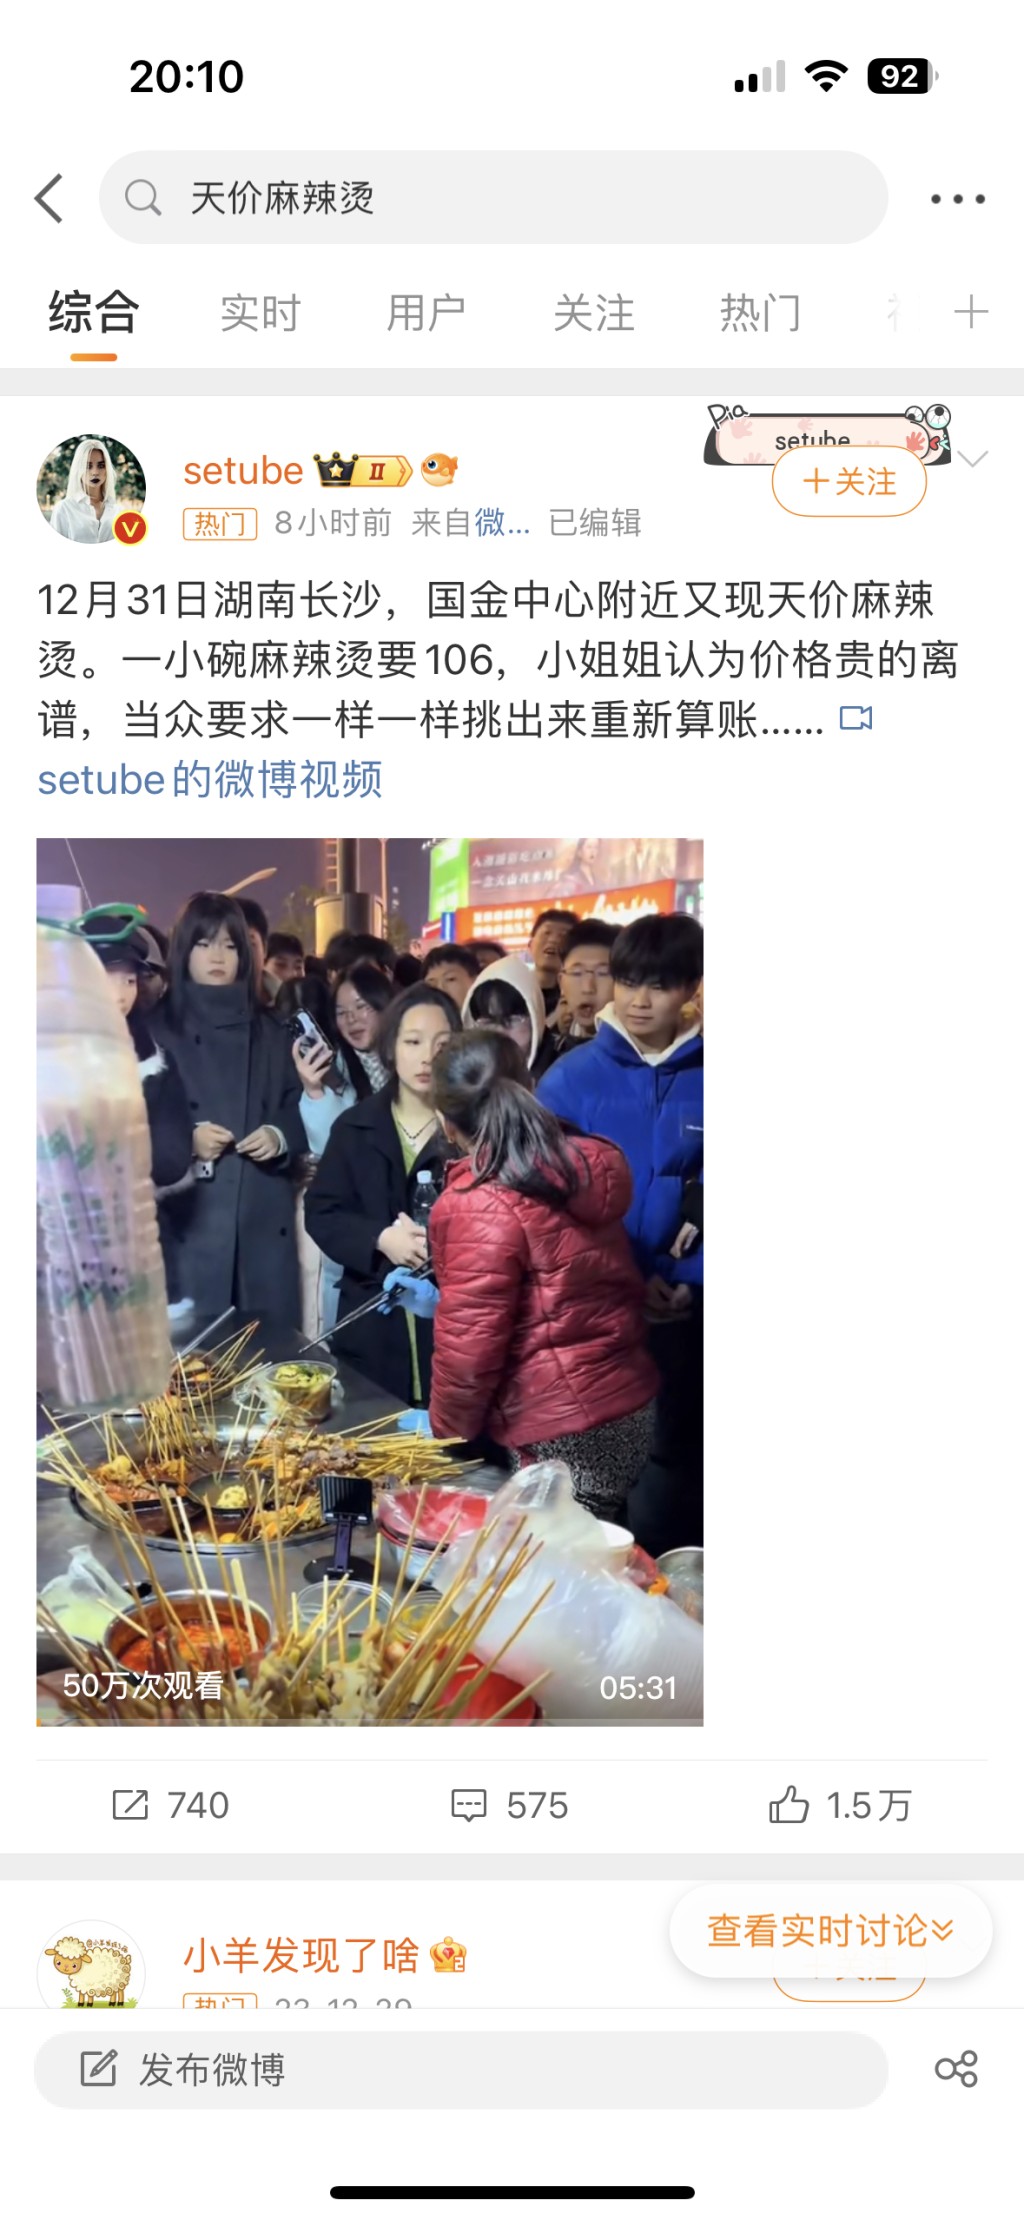 湖南女游客买天价麻辣烫，与小贩爆争执影片成为网络热话。